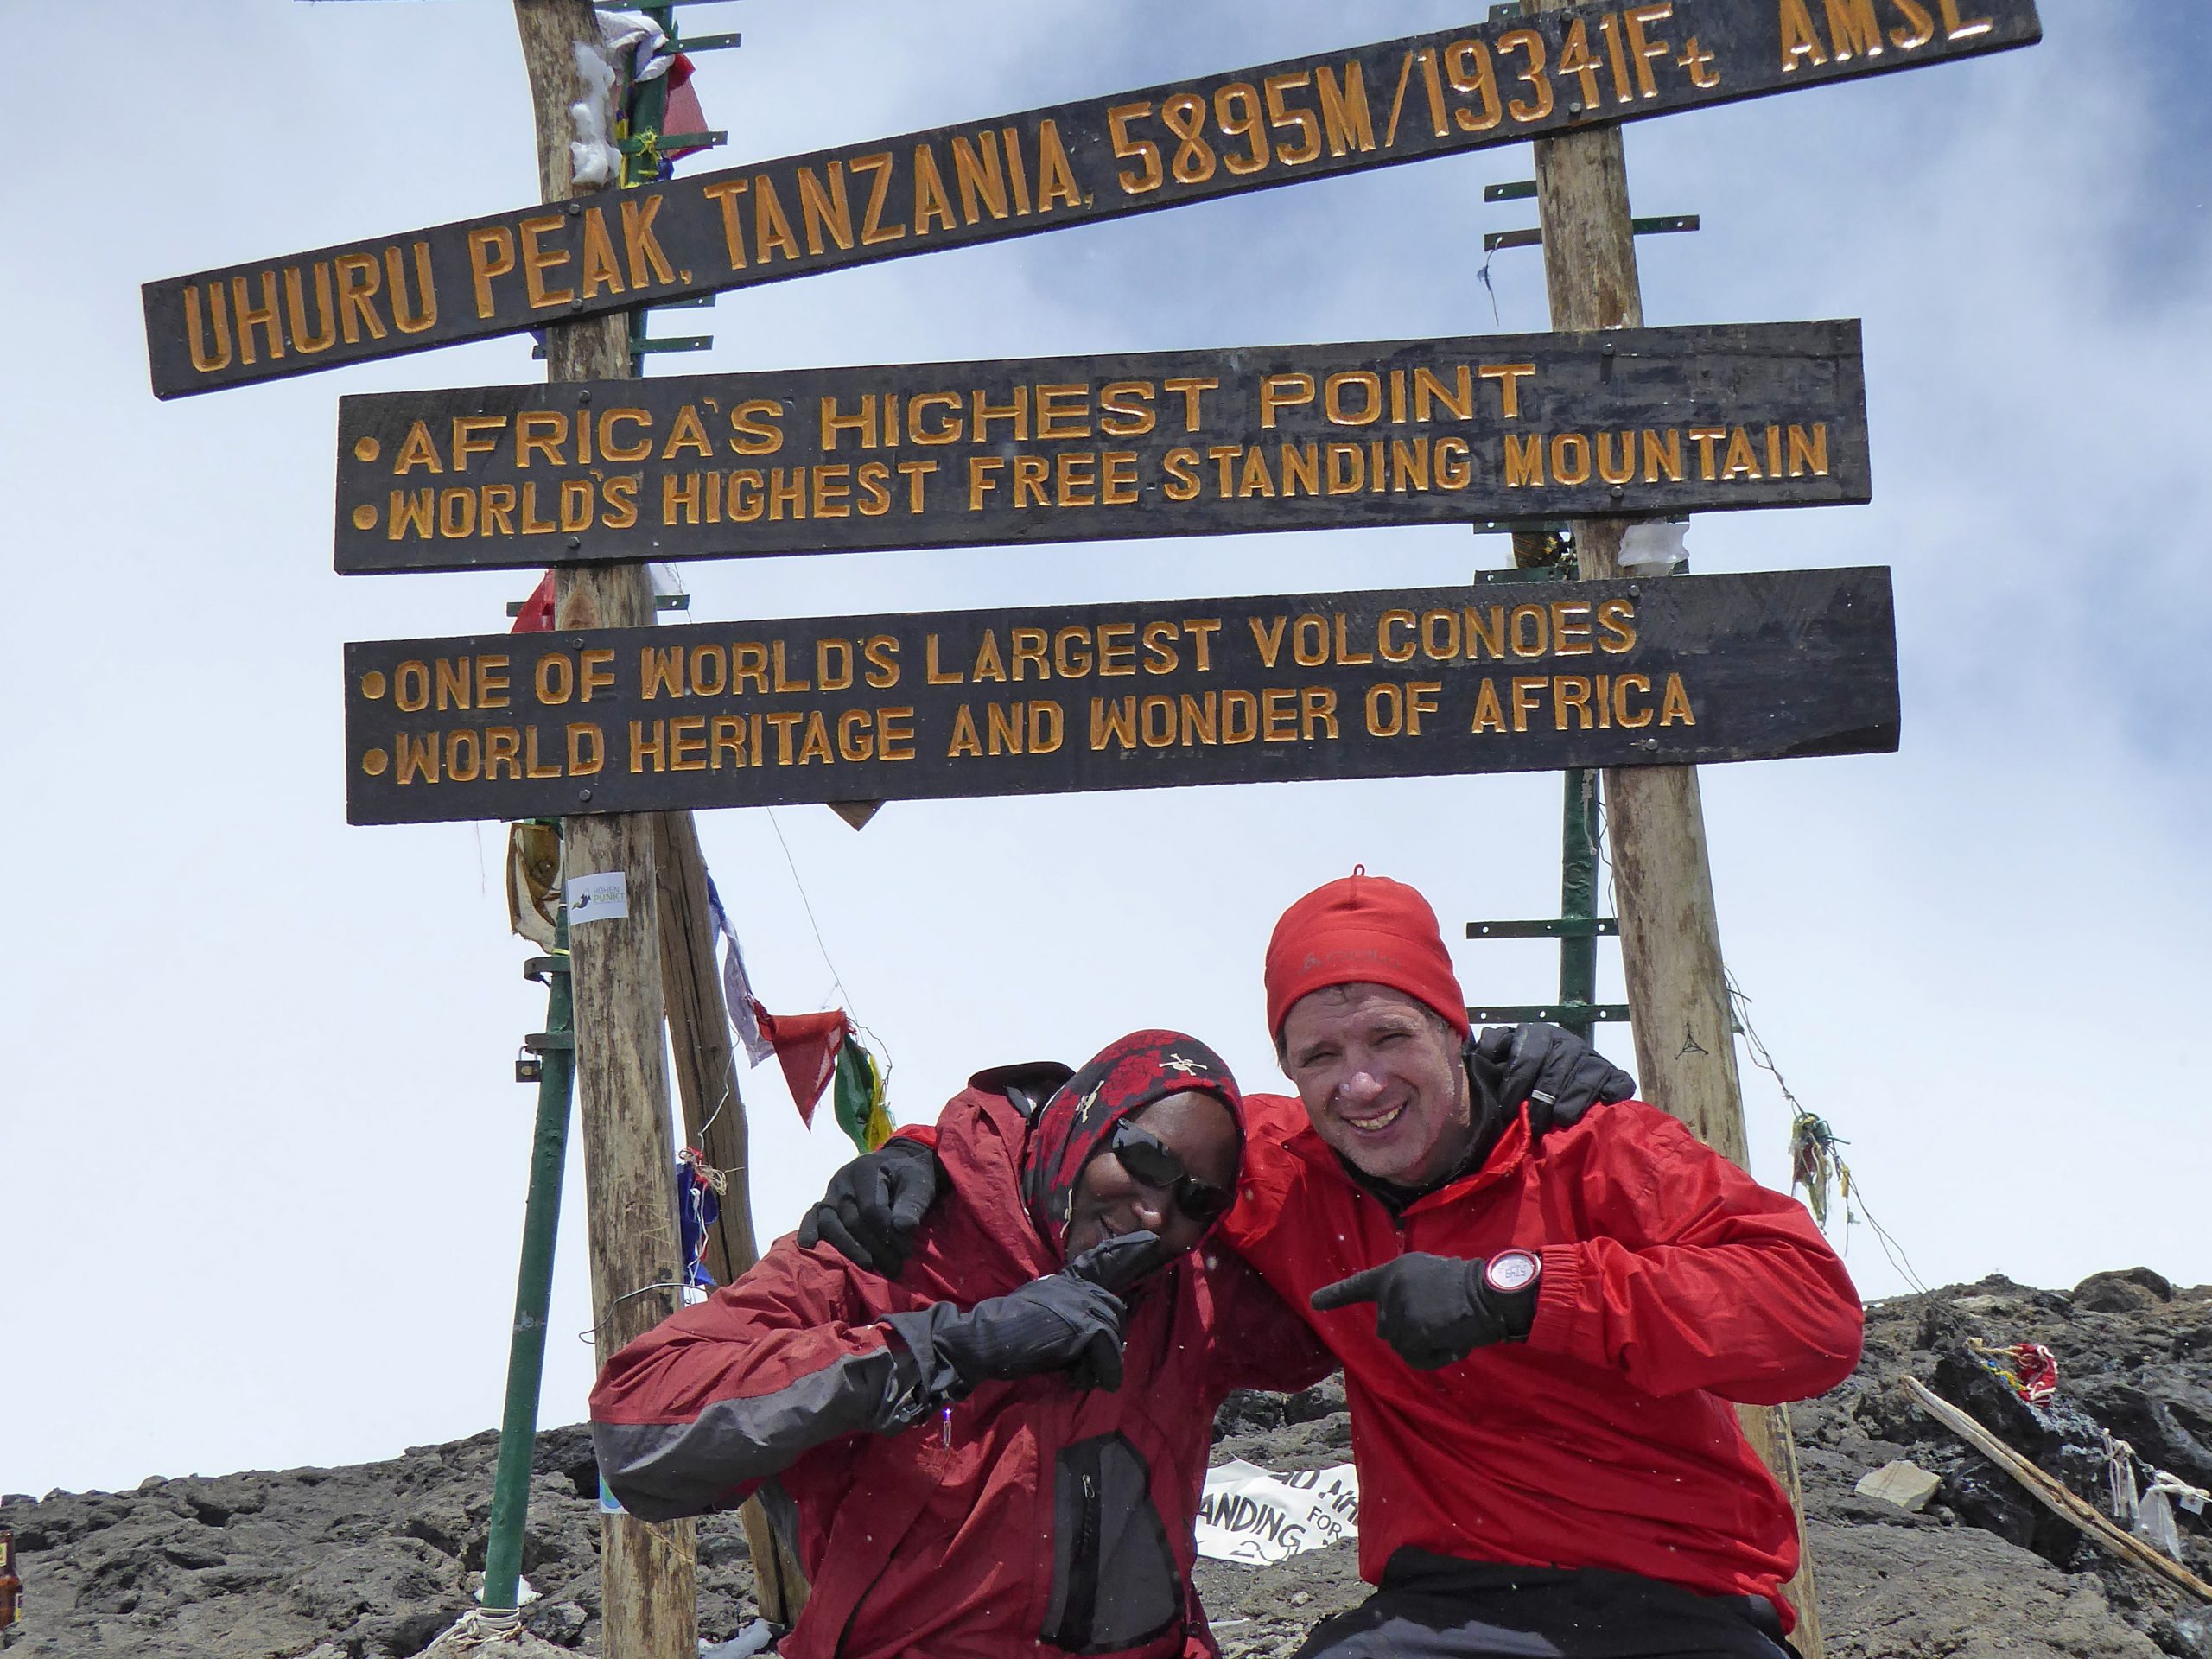 Radreise Afrika 2014 - Kilimanjaro - Uhuru-Peak (5.895m)